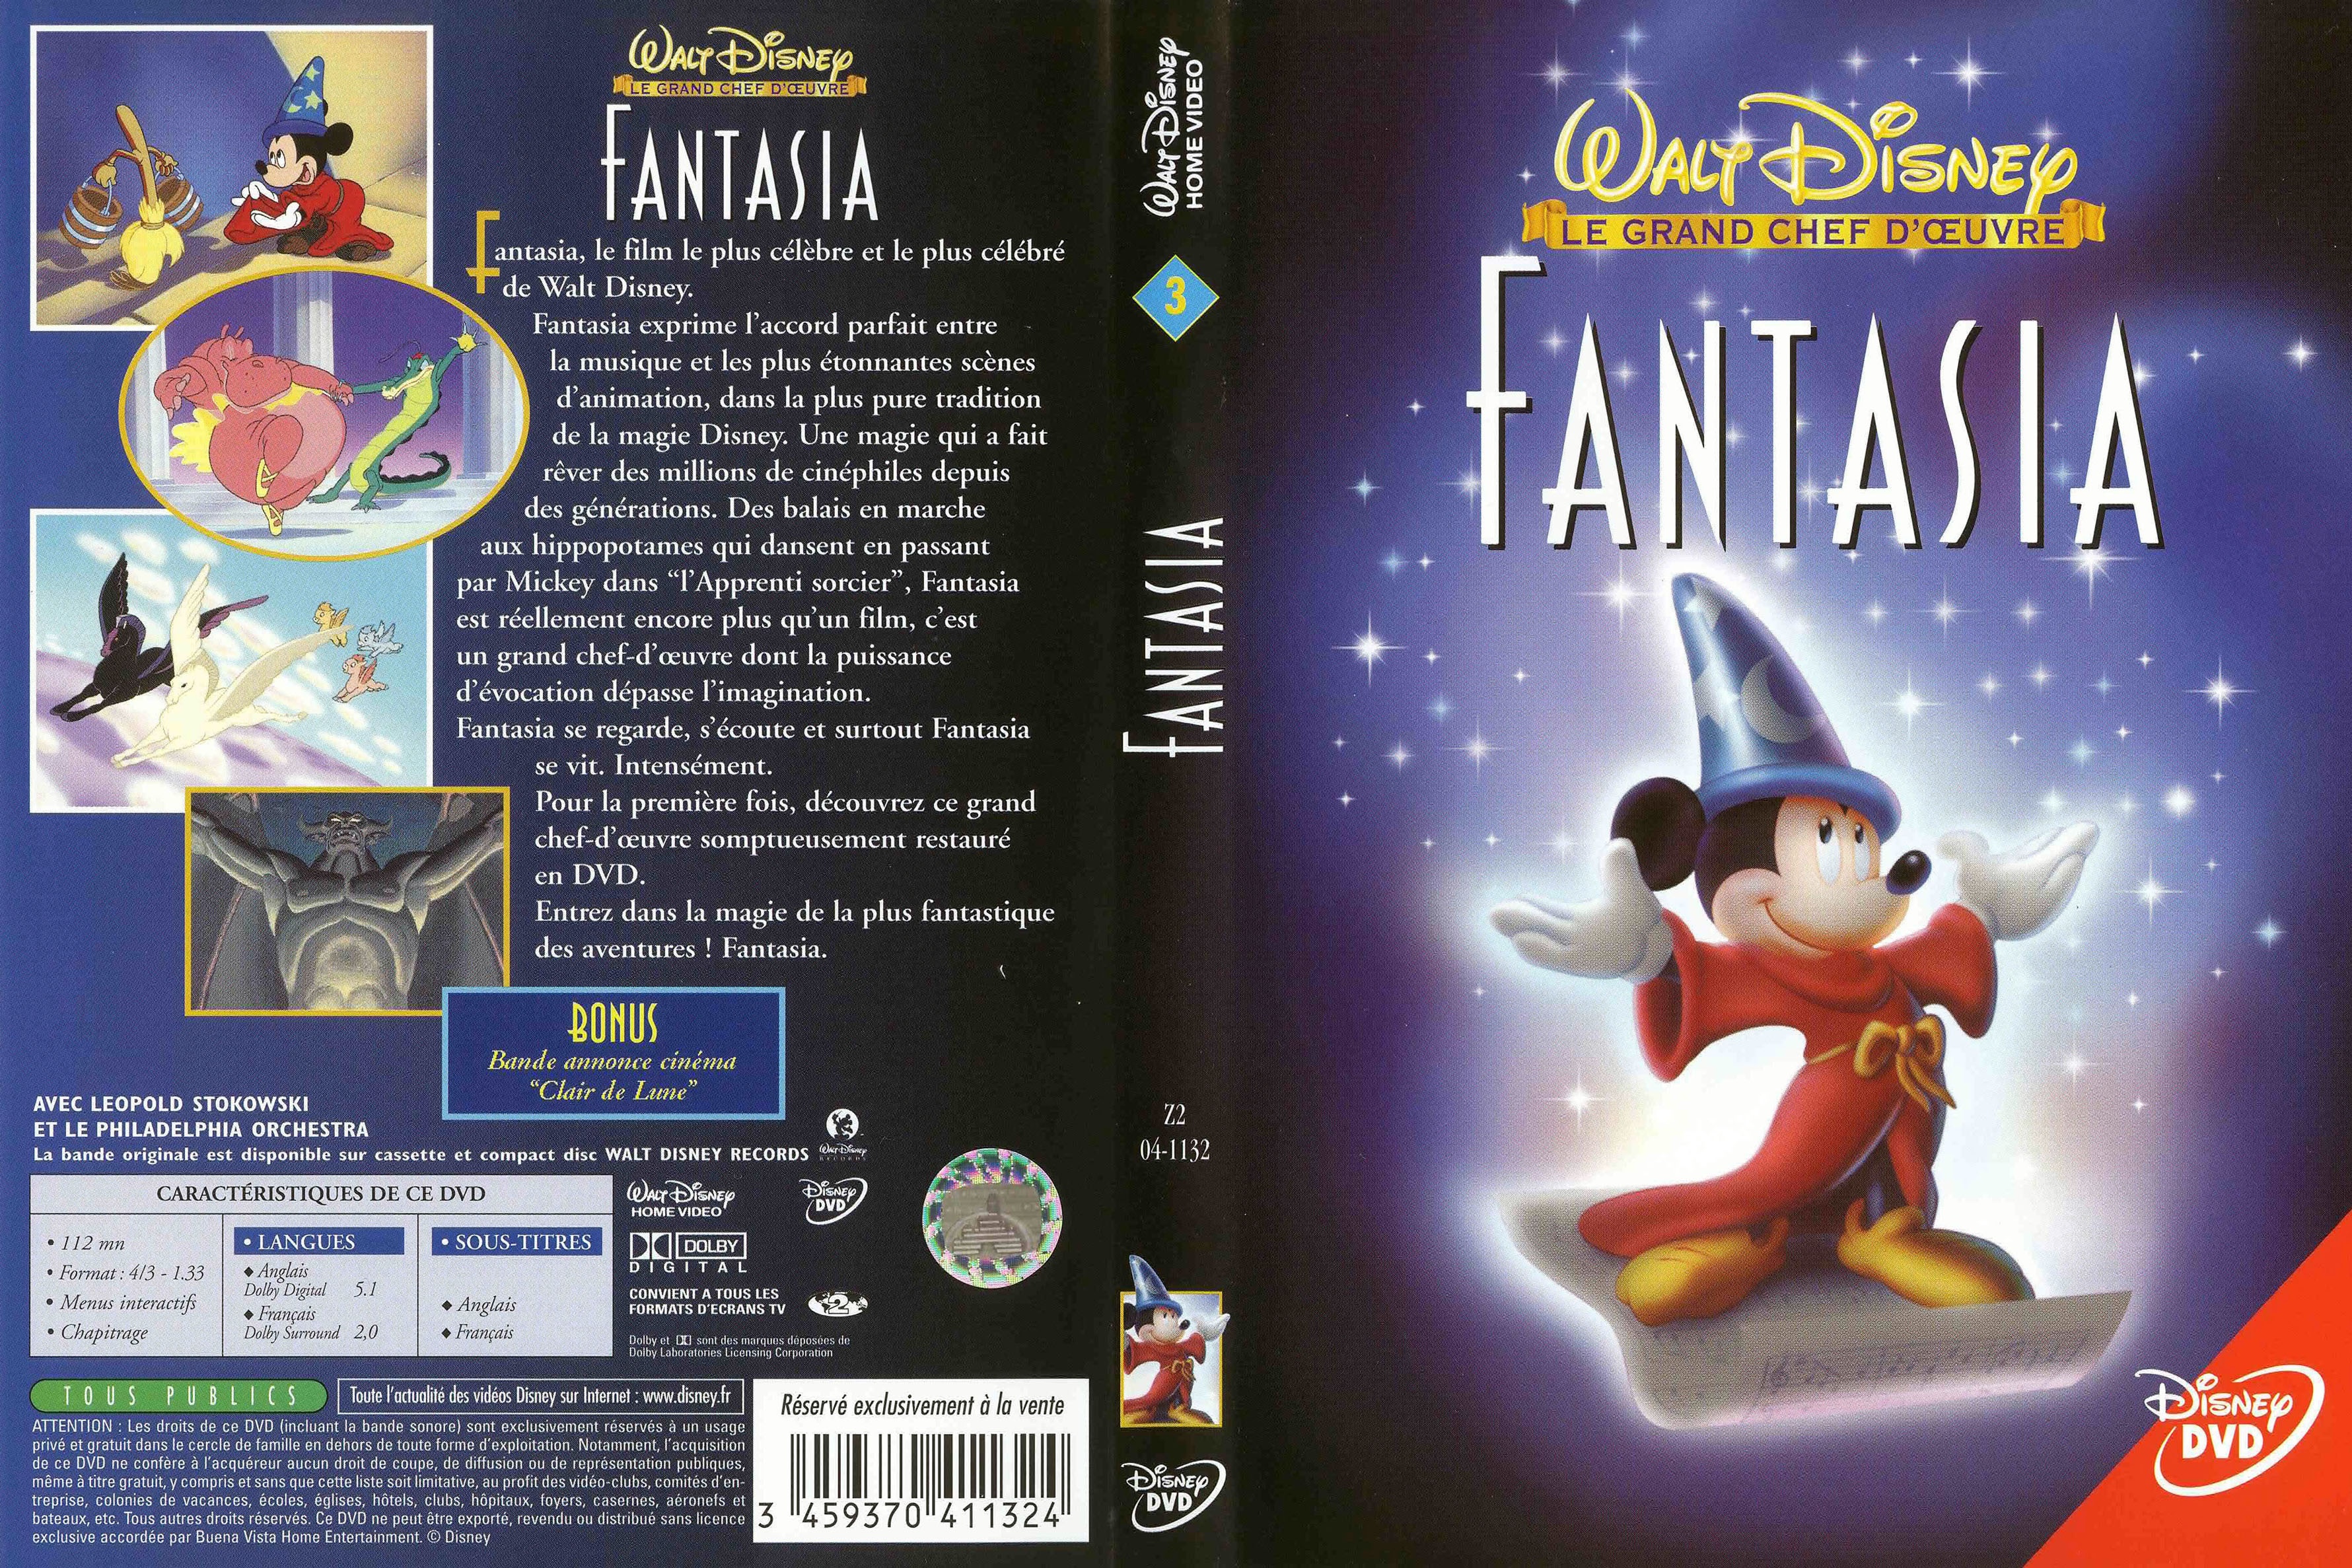 Jaquette DVD Fantasia v2